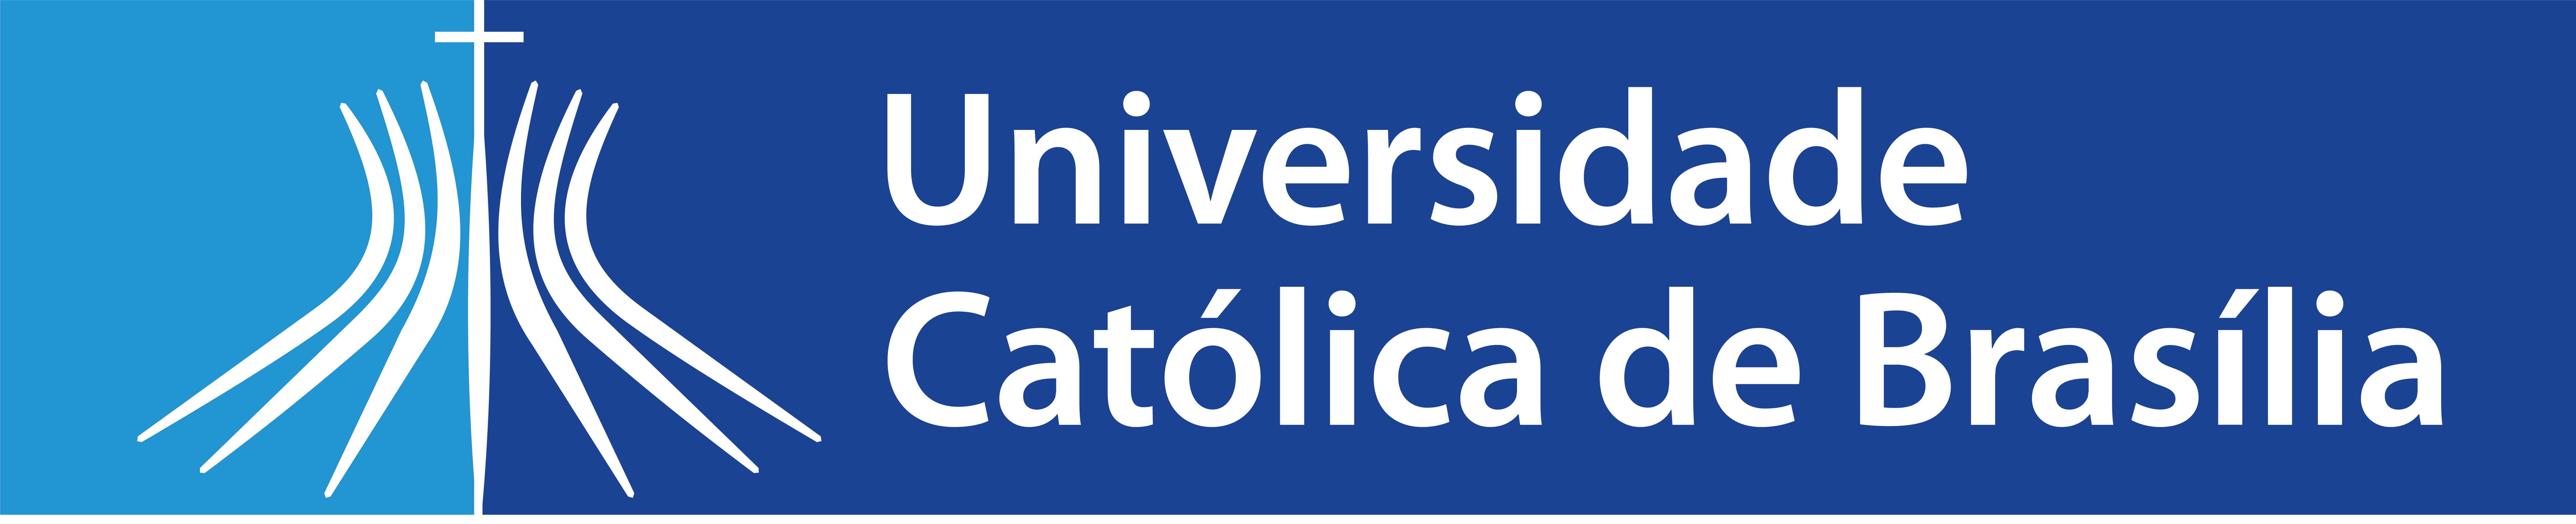 Ucb Logos